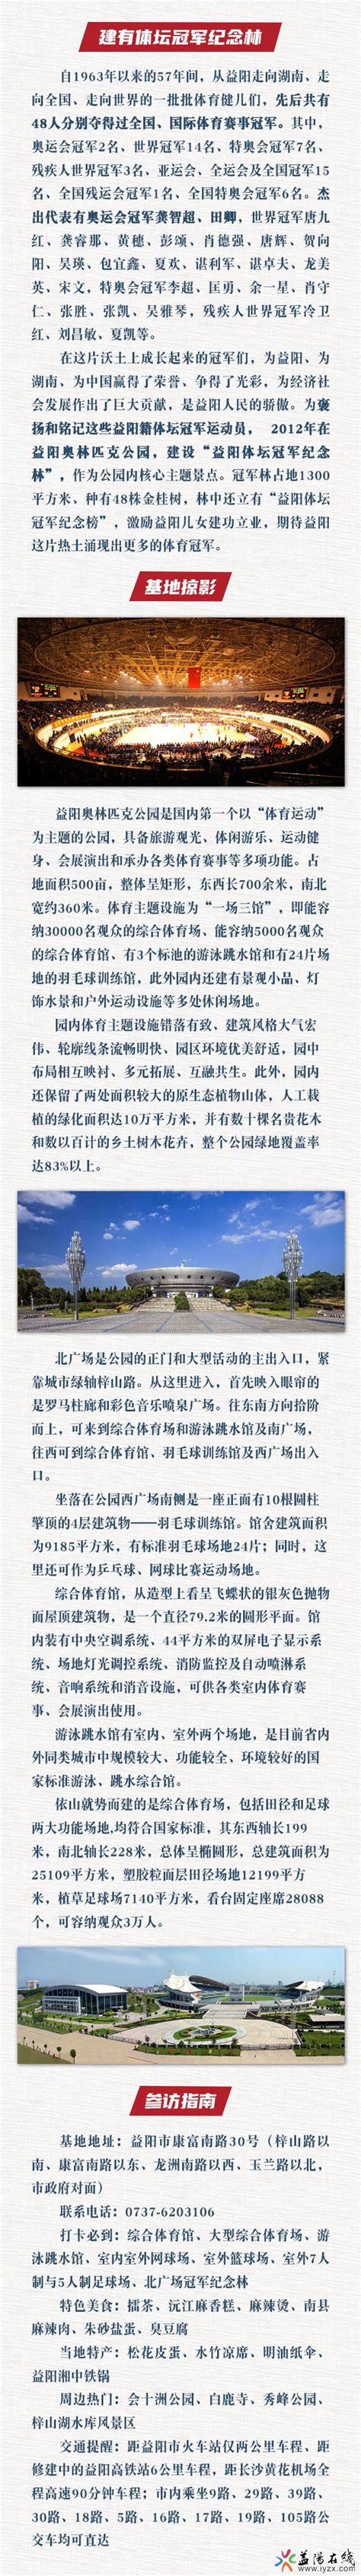 会龙山公园 - 益阳对外宣传官方网站